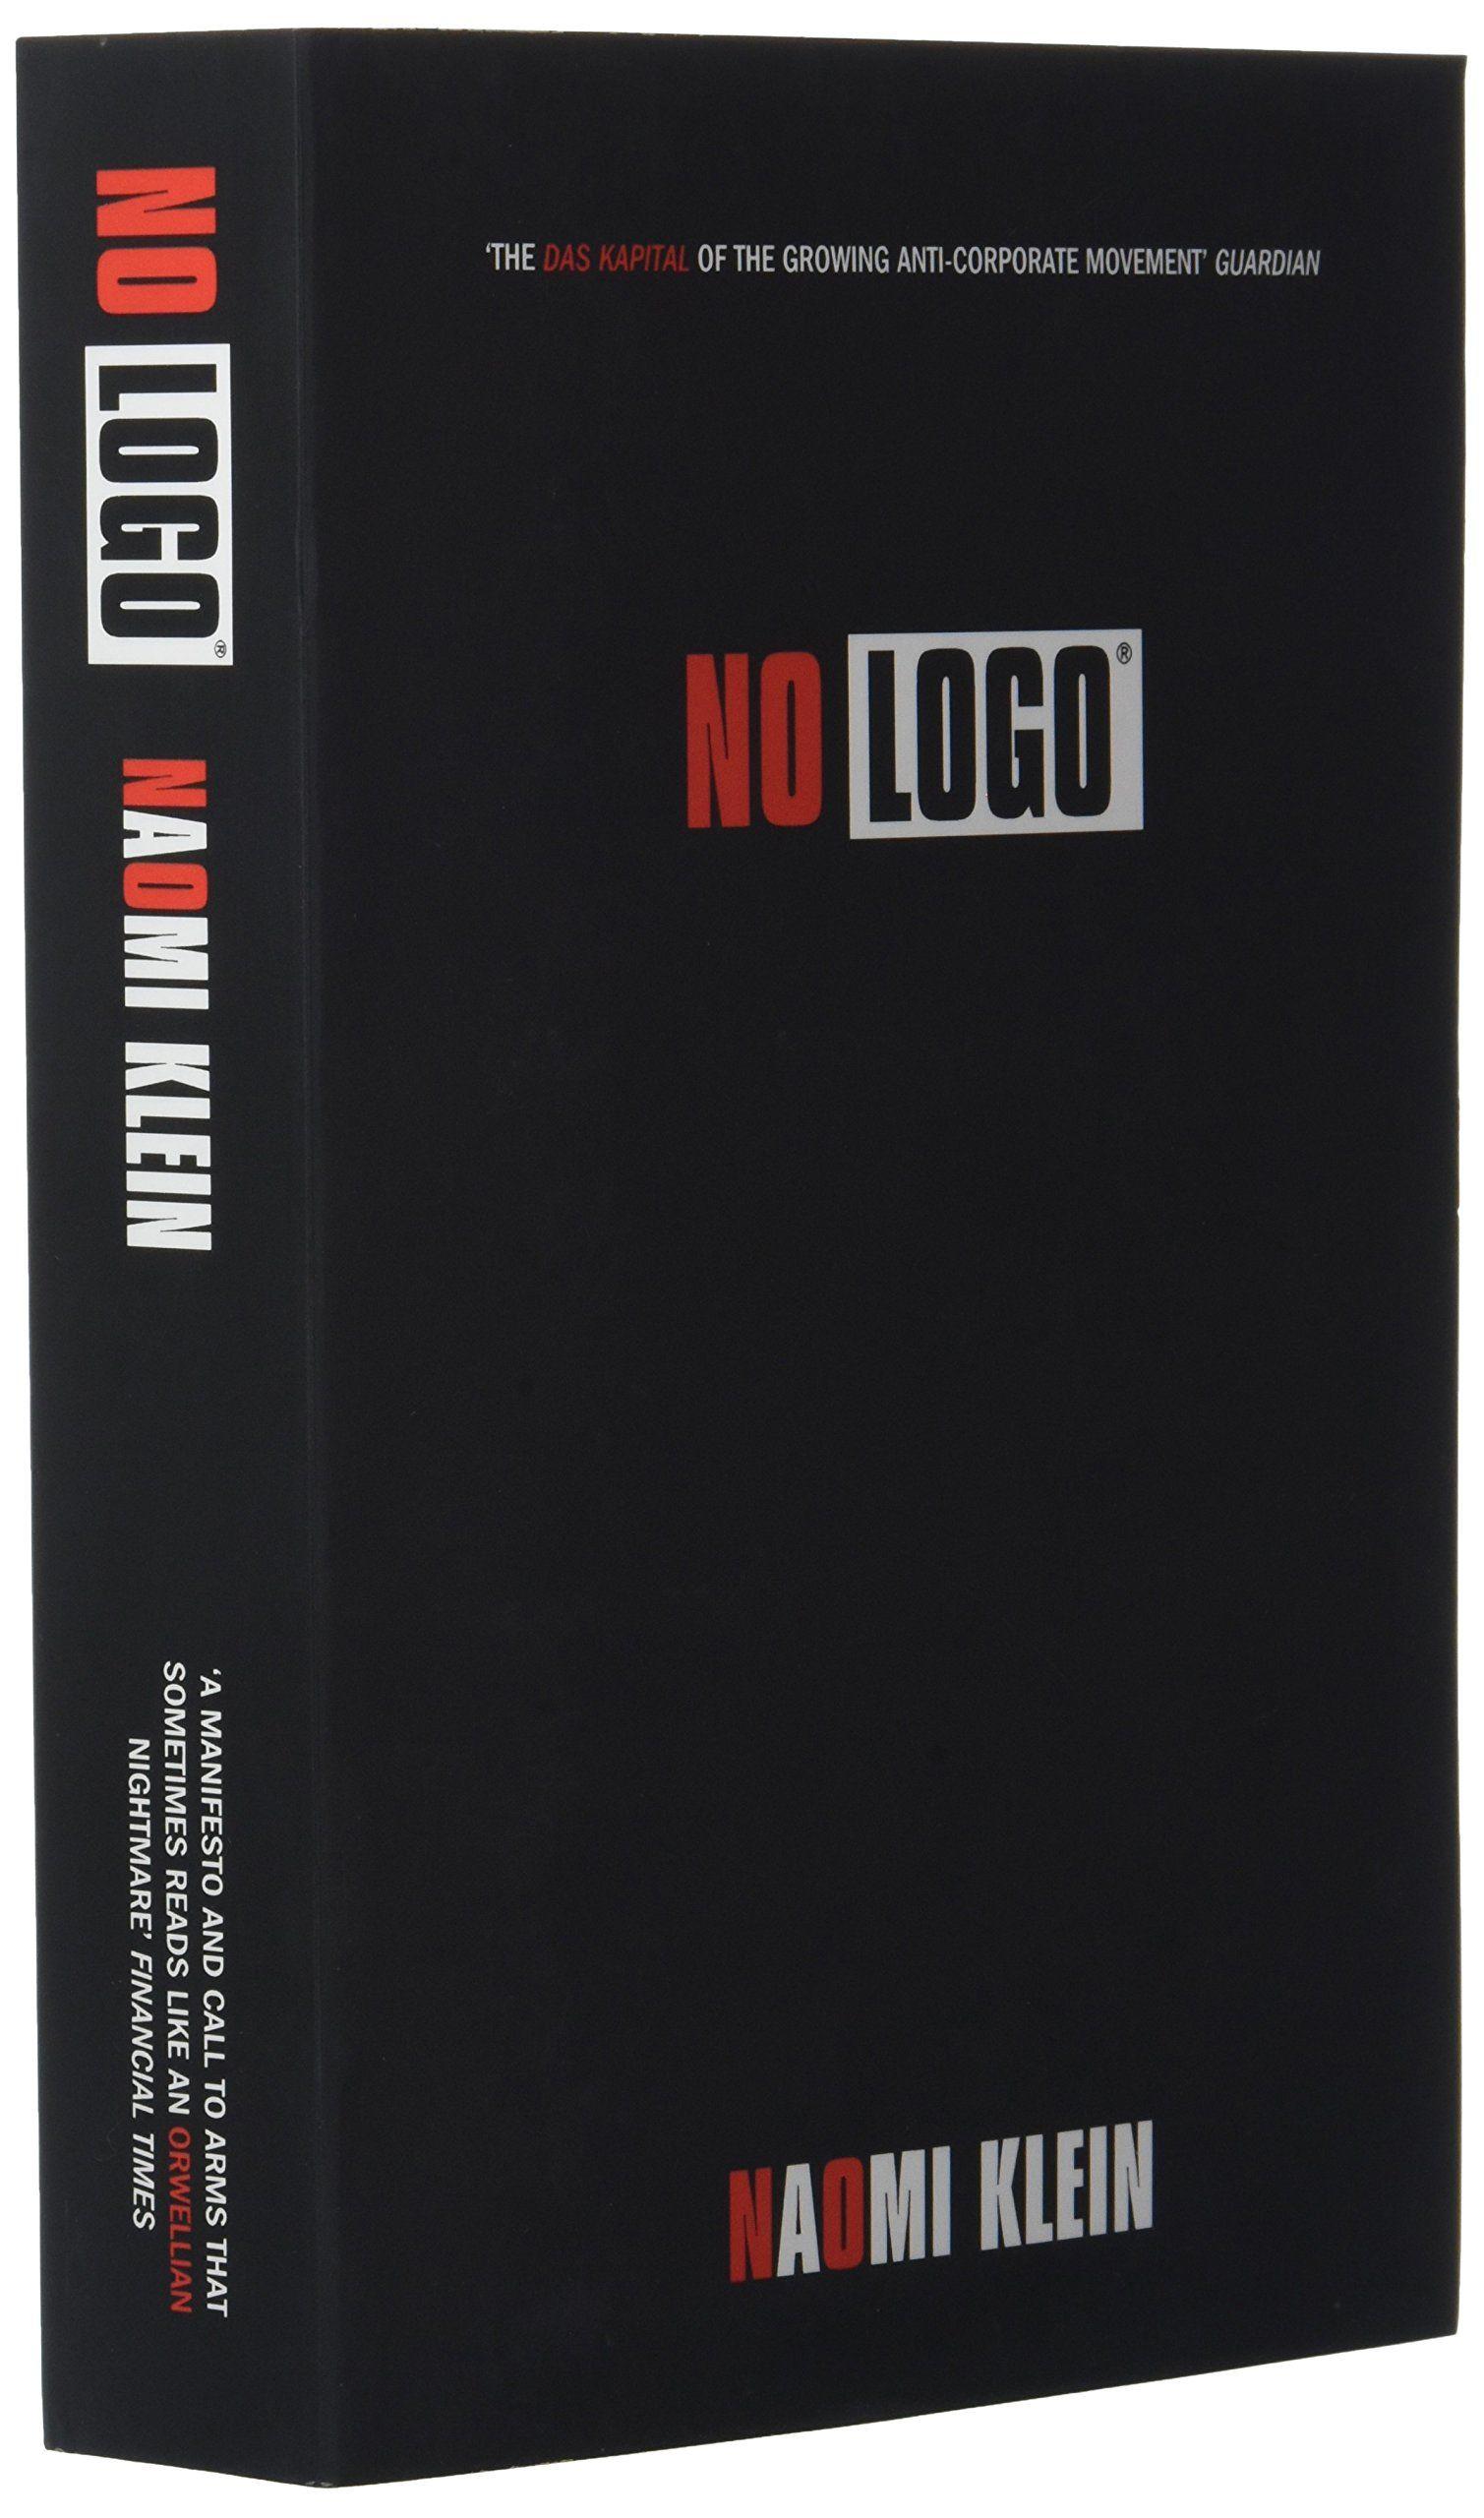 Amazon Corporate Logo - No Logo: Amazon.co.uk: Naomi Klein: 9780007340774: Books